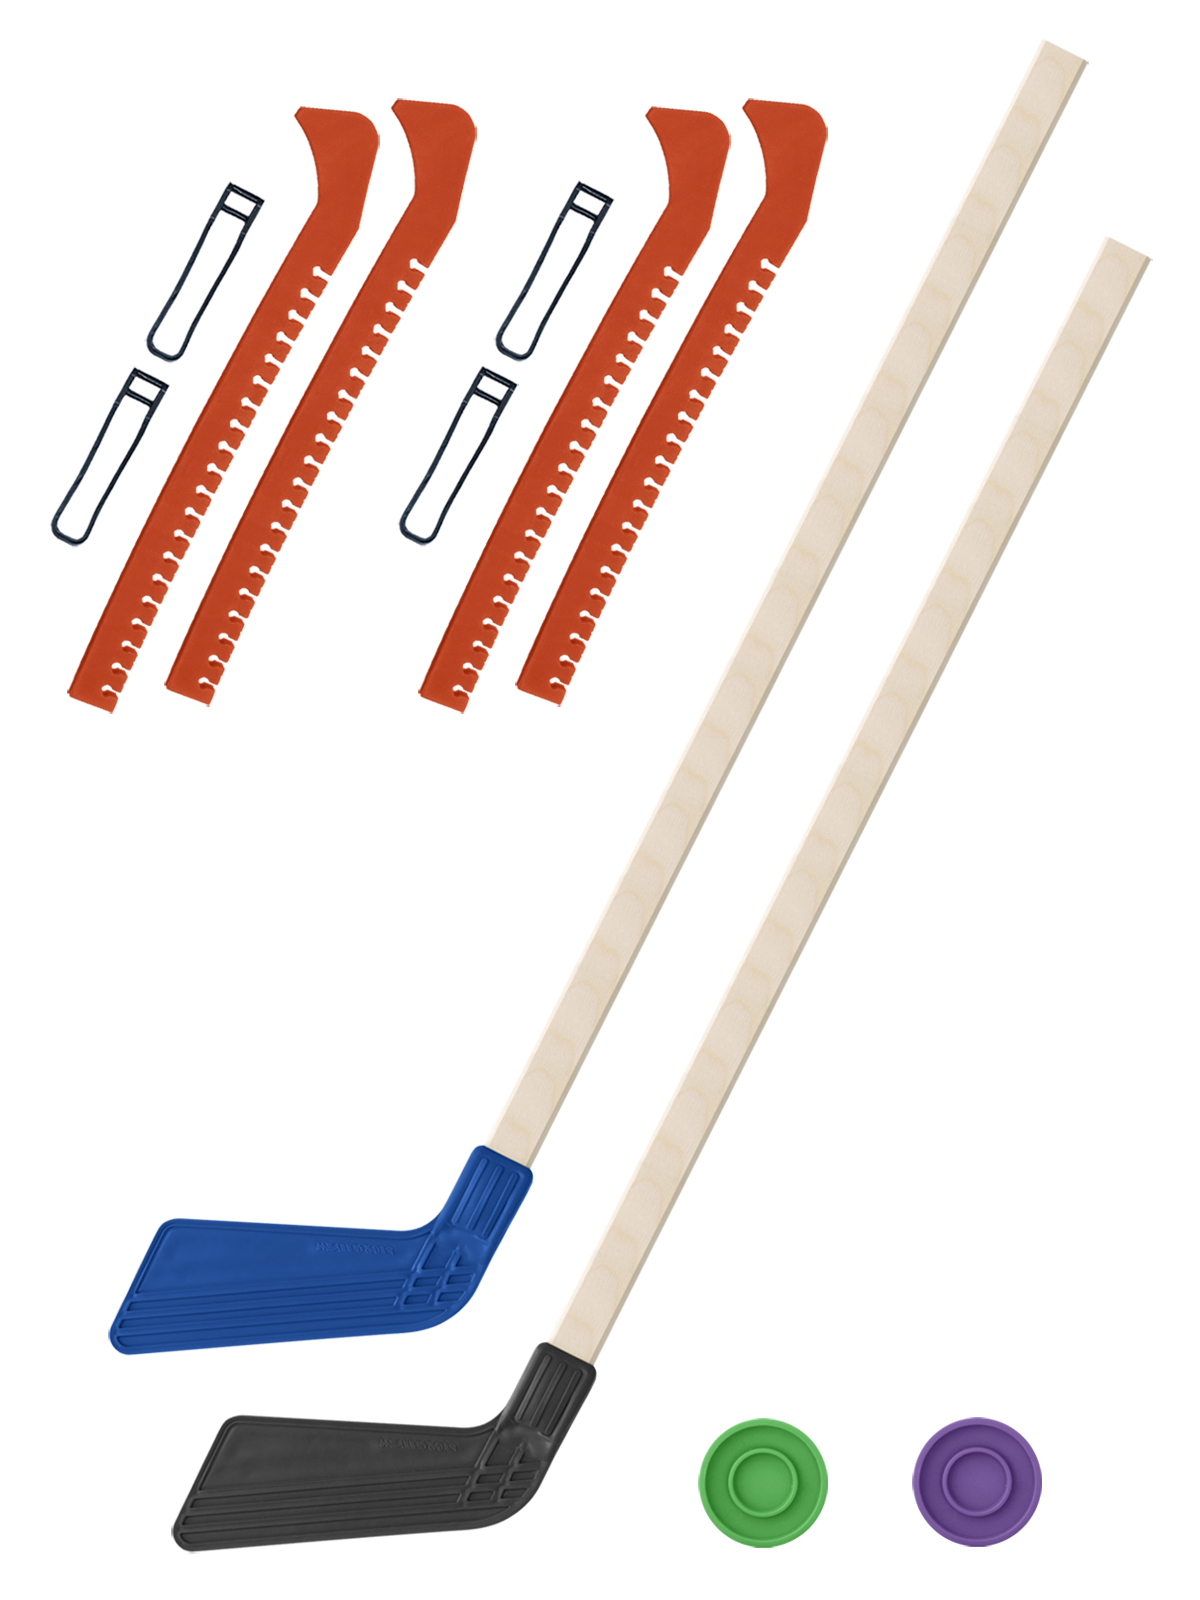 Хоккейный набор Задира-плюс клюшка детская(син+чер)2шт+2шайбы+чехлы для коньков оранж 2шт